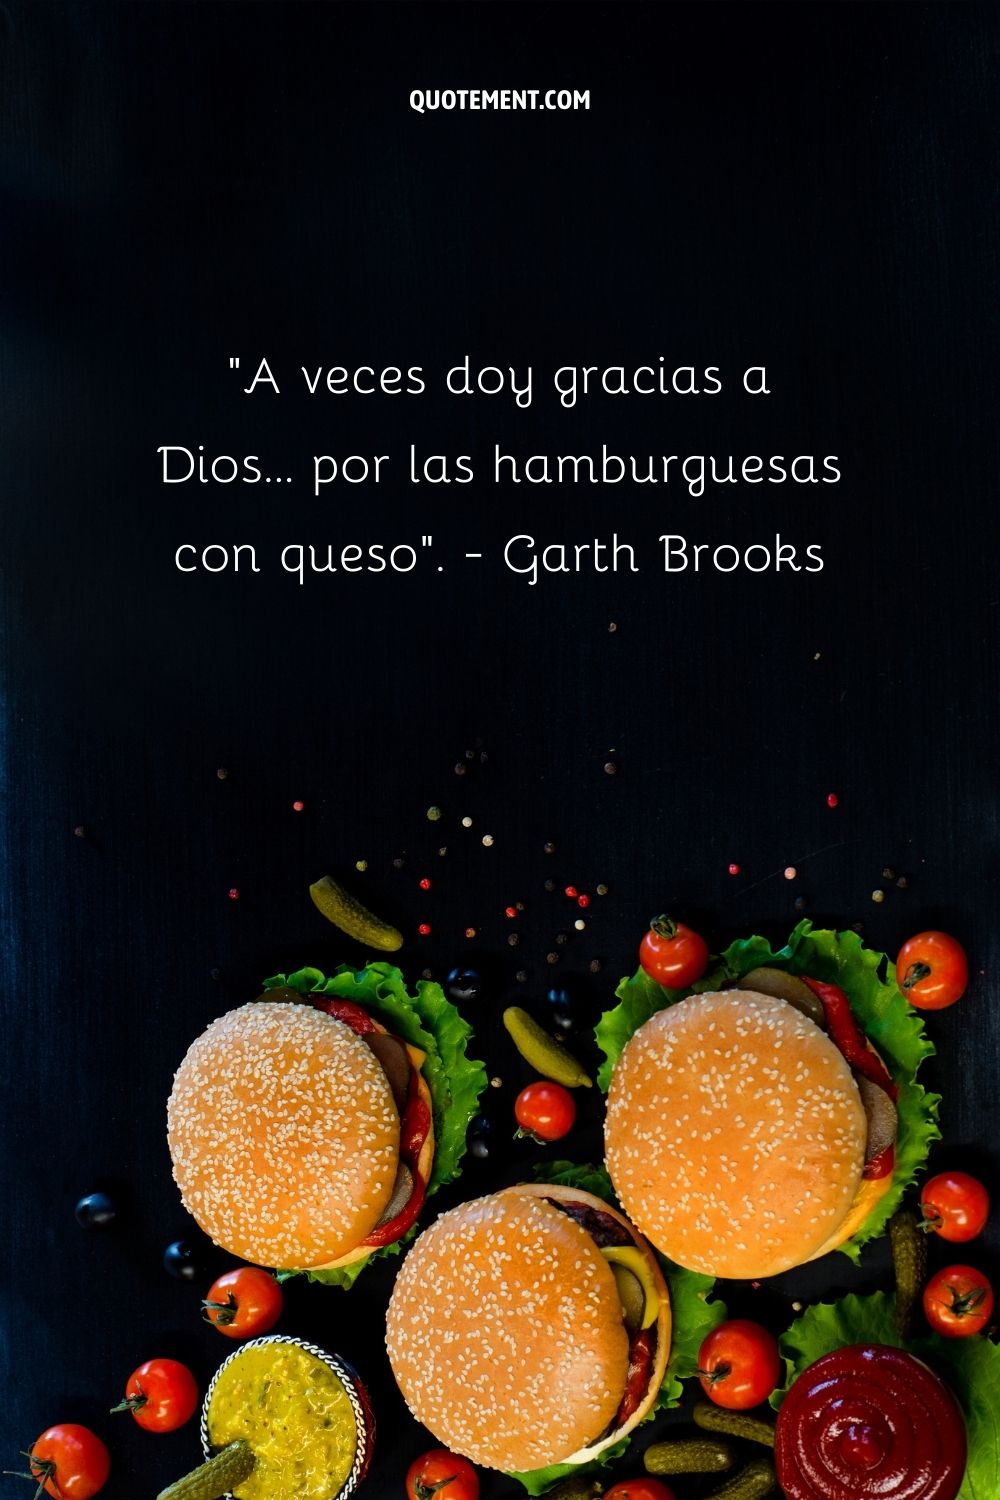 "A veces doy gracias a Dios... por las hamburguesas con queso". - Garth Brooks